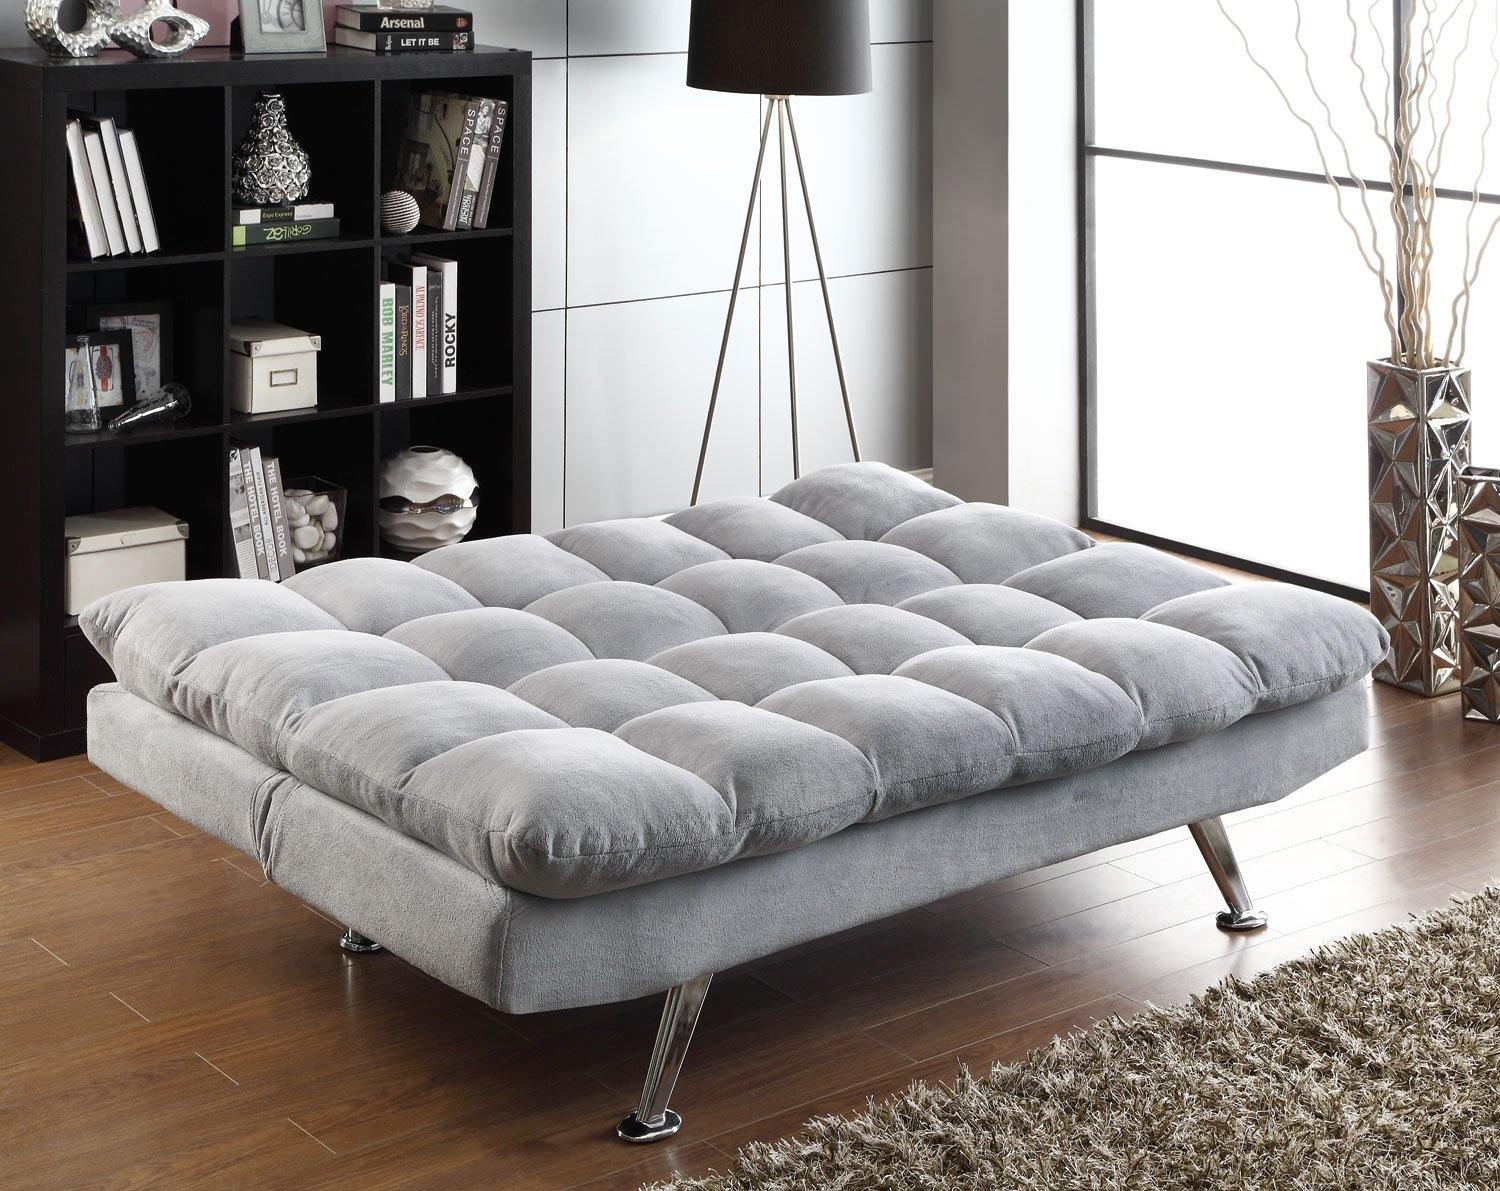 500775 Chrome Transitional Living room : sofa beds By coaster - sofafair.com